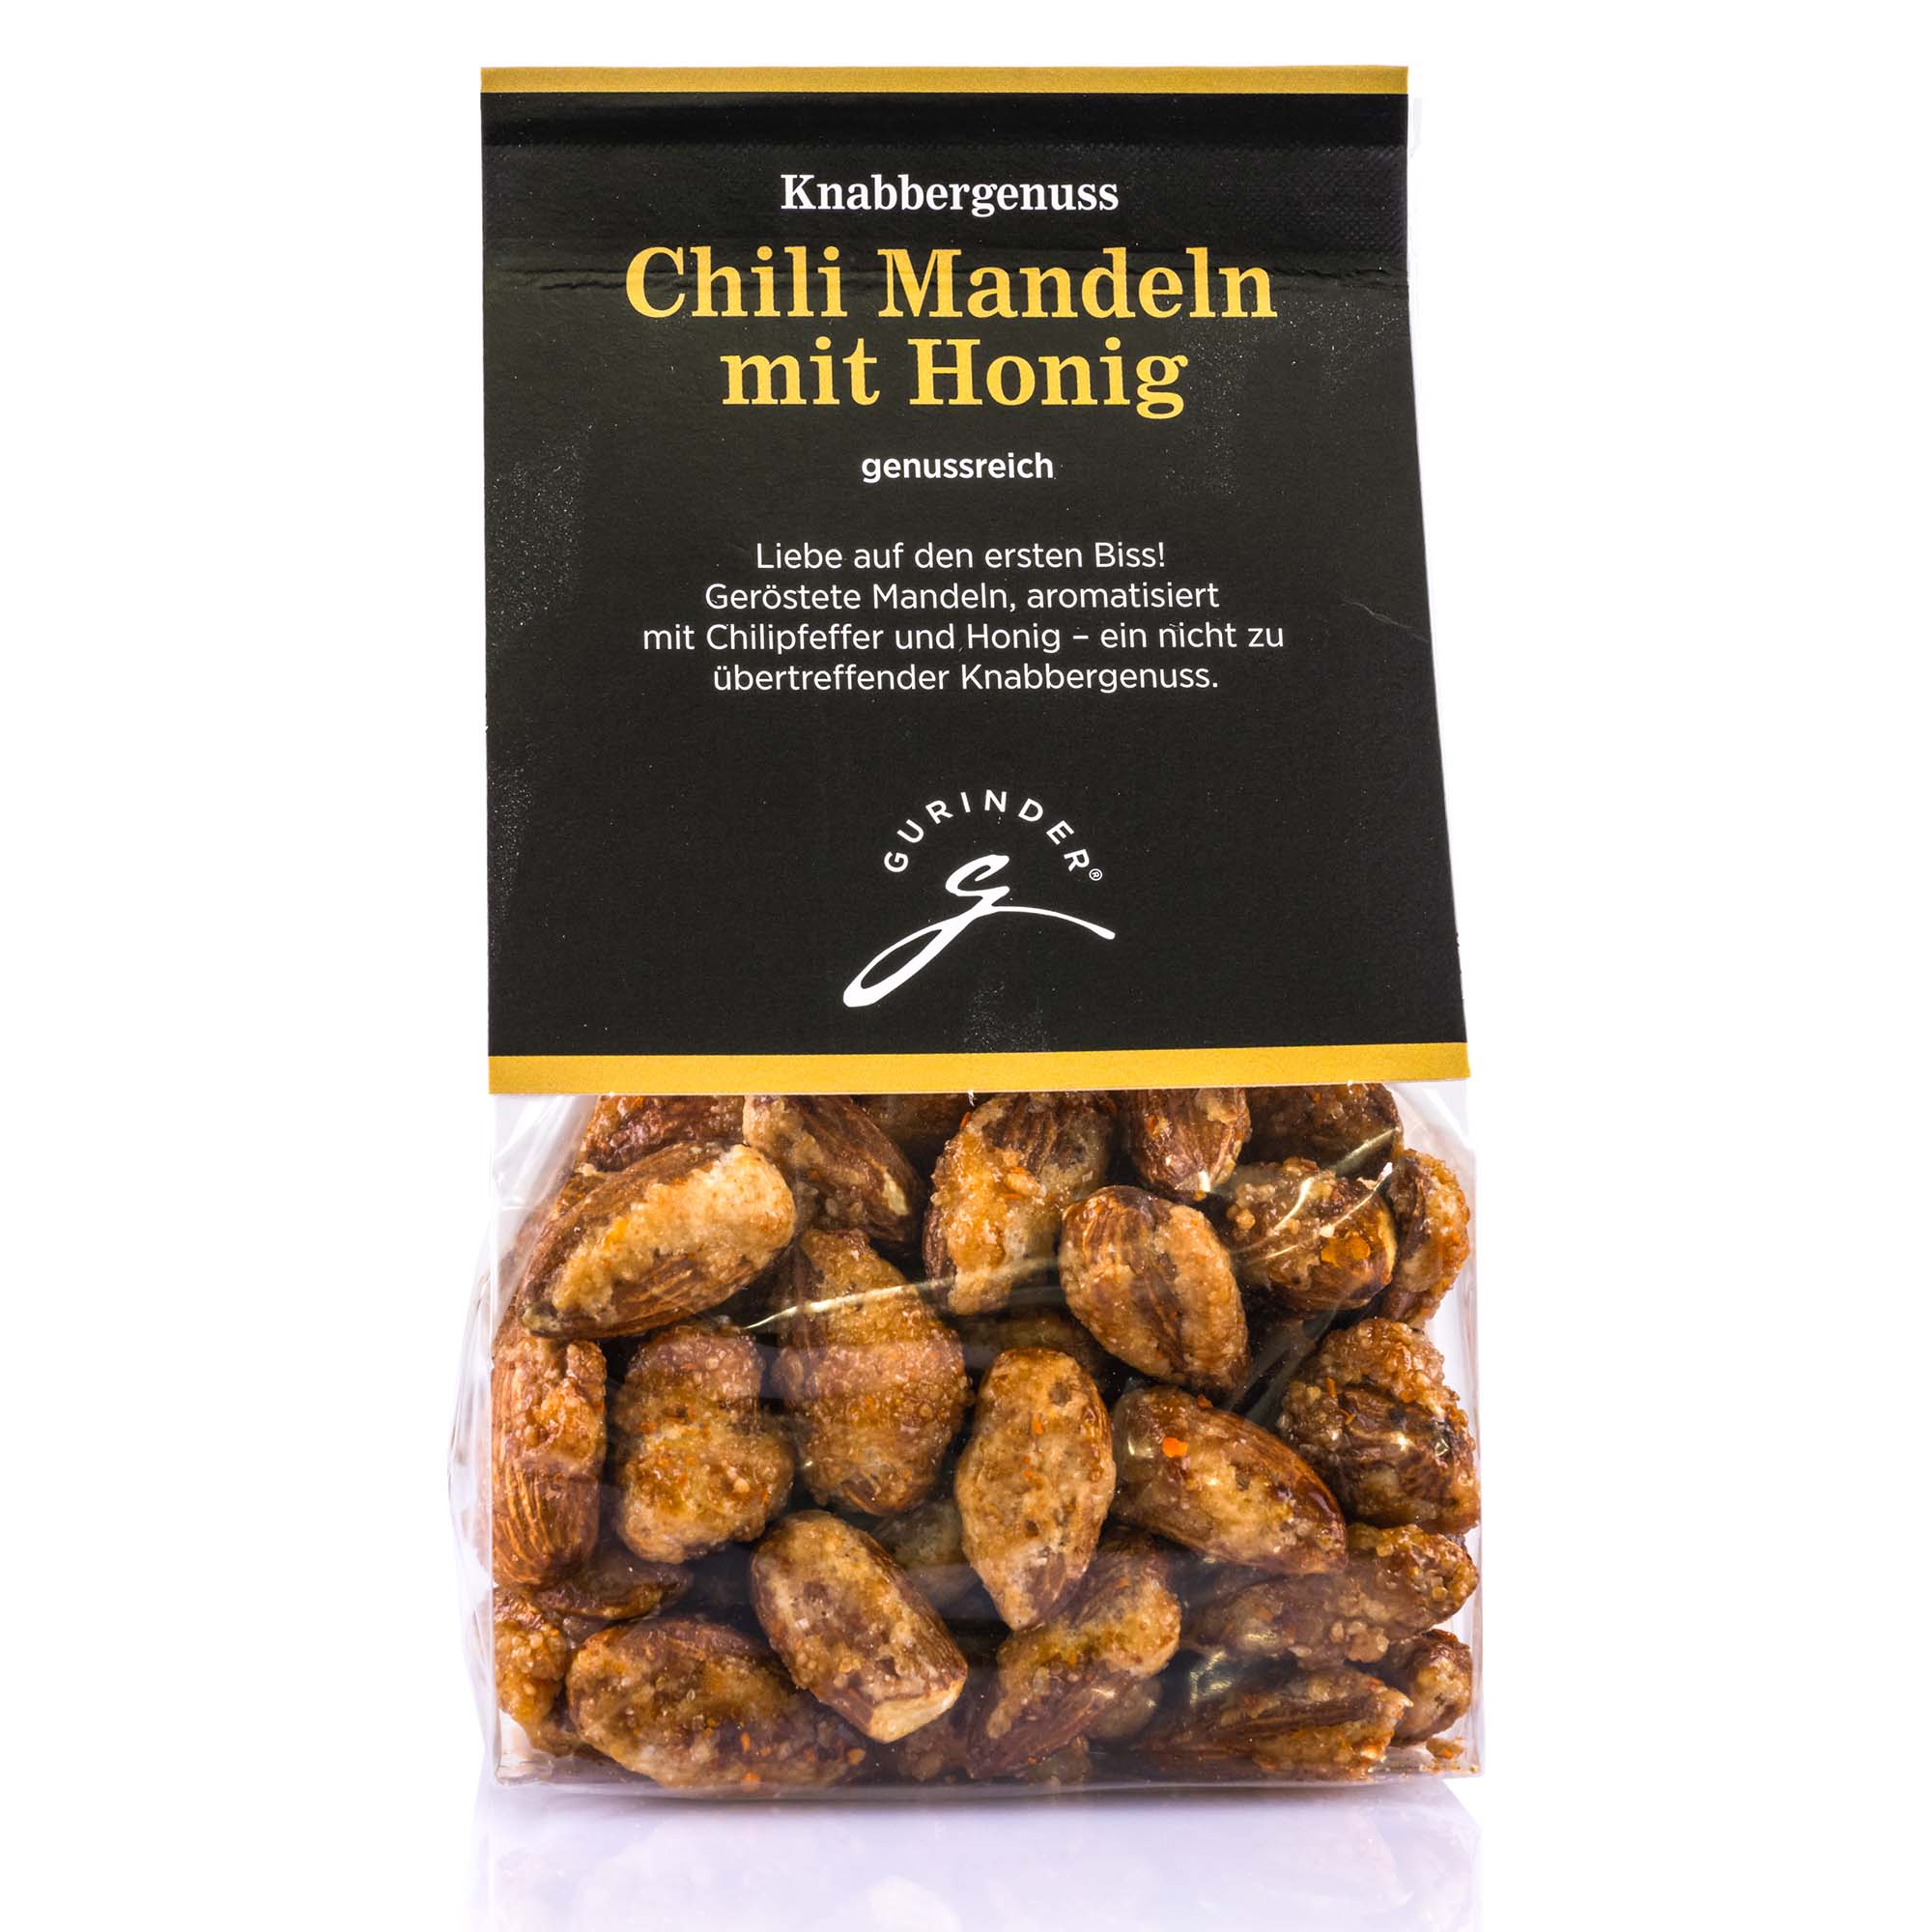 Chili Mandeln mit Honig, 140g